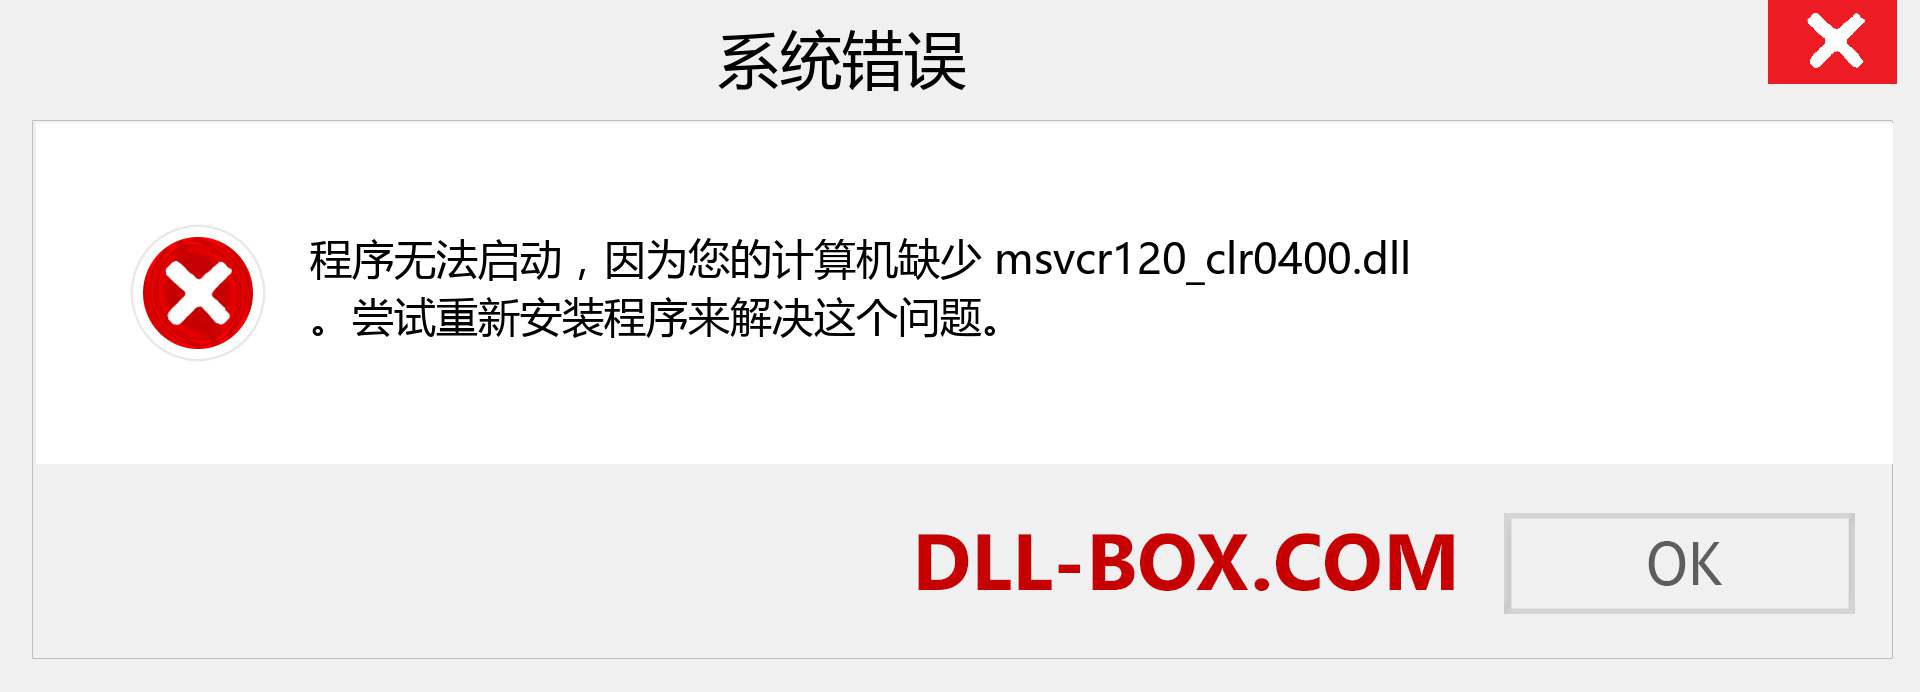 msvcr120_clr0400.dll 文件丢失？。 适用于 Windows 7、8、10 的下载 - 修复 Windows、照片、图像上的 msvcr120_clr0400 dll 丢失错误